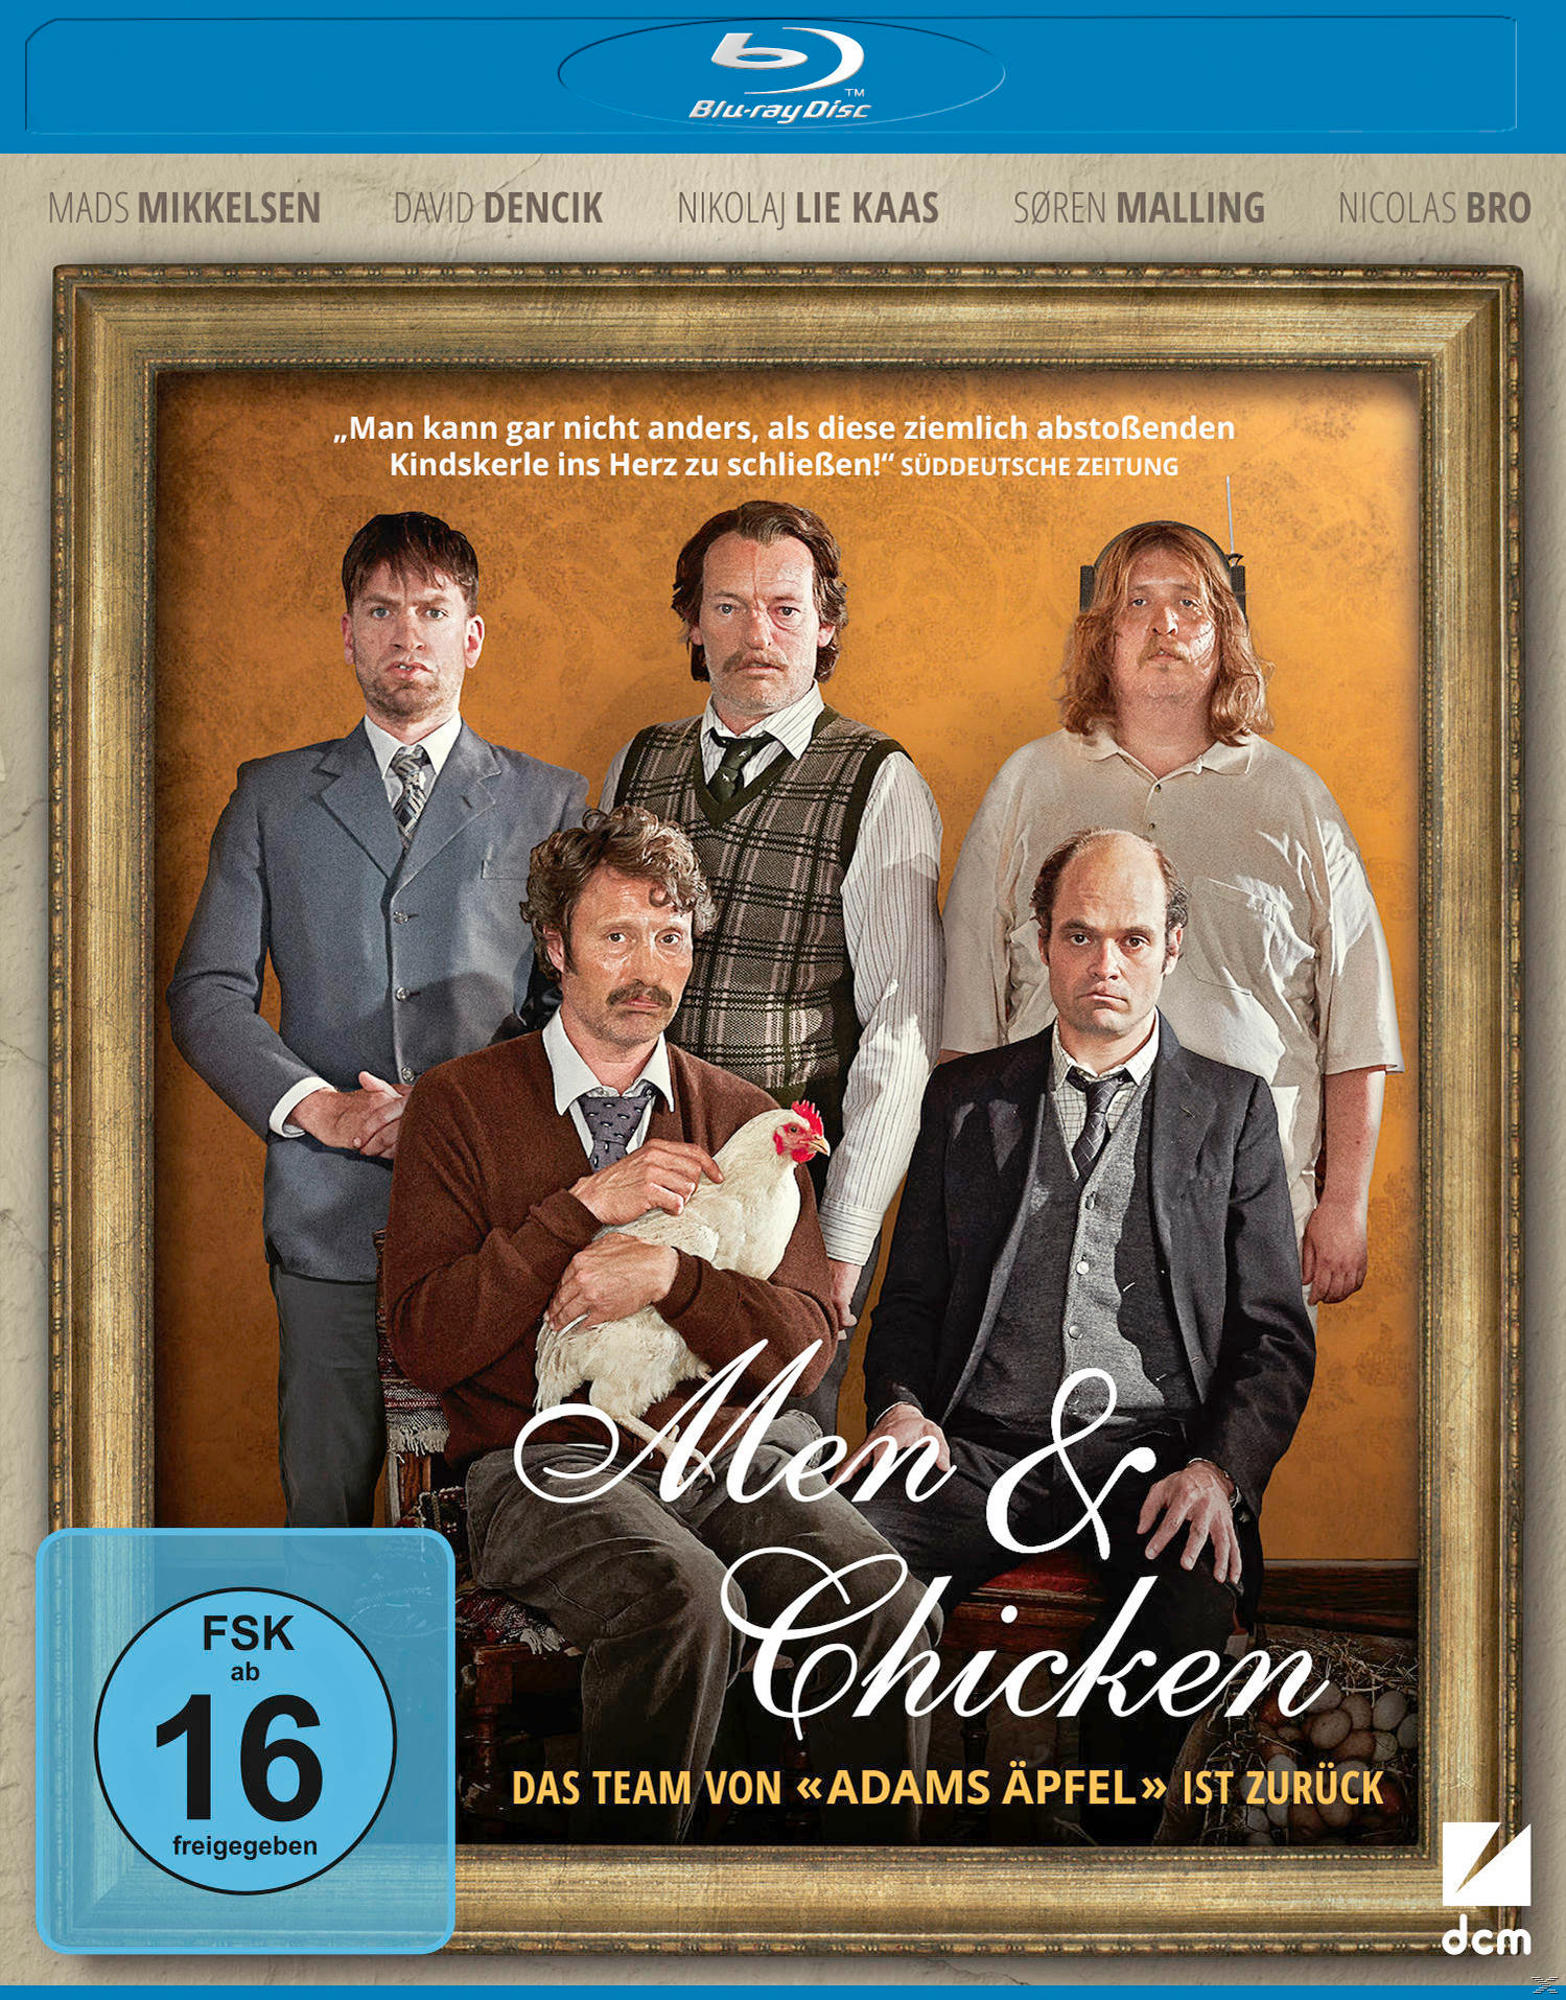 & Chicken Men Blu-ray